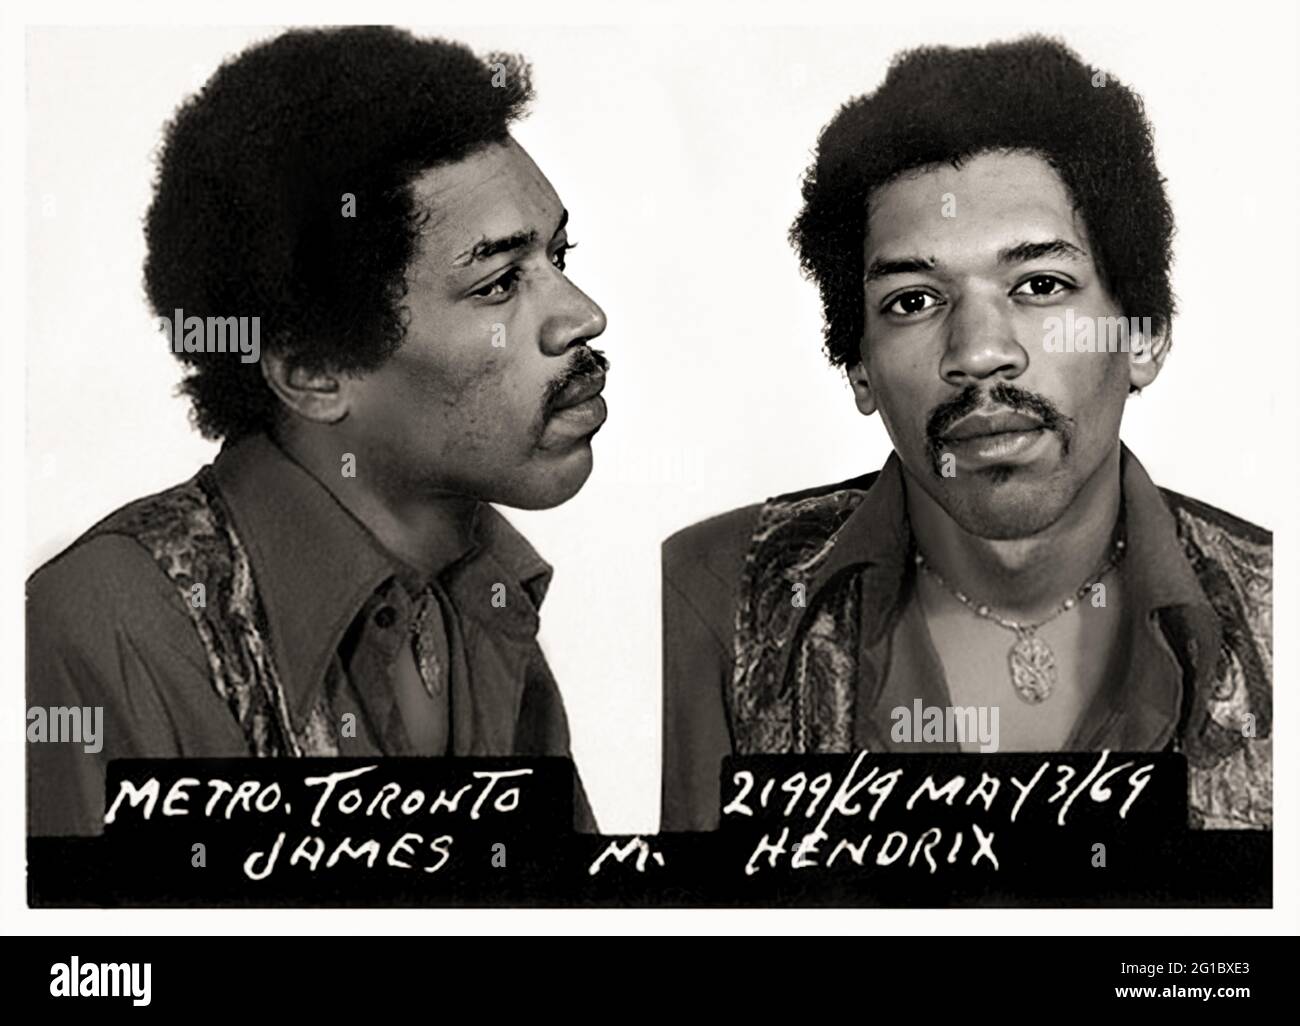 1969, 3 maggio, Toronto, CANADA: Il celebre cantante e chitarrista americano Rockstar JIMI HENDRIX ( 1942 - 1970 ), quando è stato arrestato, processato e assolto in Canada per possesso di droga all'aeroporto internazionale di Toronto dal Dipartimento di polizia di Toronto (Canada) nella mug-shot ufficiale . Fotografo sconosciuto , Toronto . - James Marshall Johnny Allen Hendrix - STORIA - FOTO STORICHE - MUSICA - MUSICA - cantante - COMPOSITORE - compositore - CHITARRISTA - ROCK STAR - ARRESTO - arrestazione - arrestato DALLA POLIZIA - FOTO SEGNALETICA - Mugshot - Mug shot - ribelle - baffi - moust Foto Stock